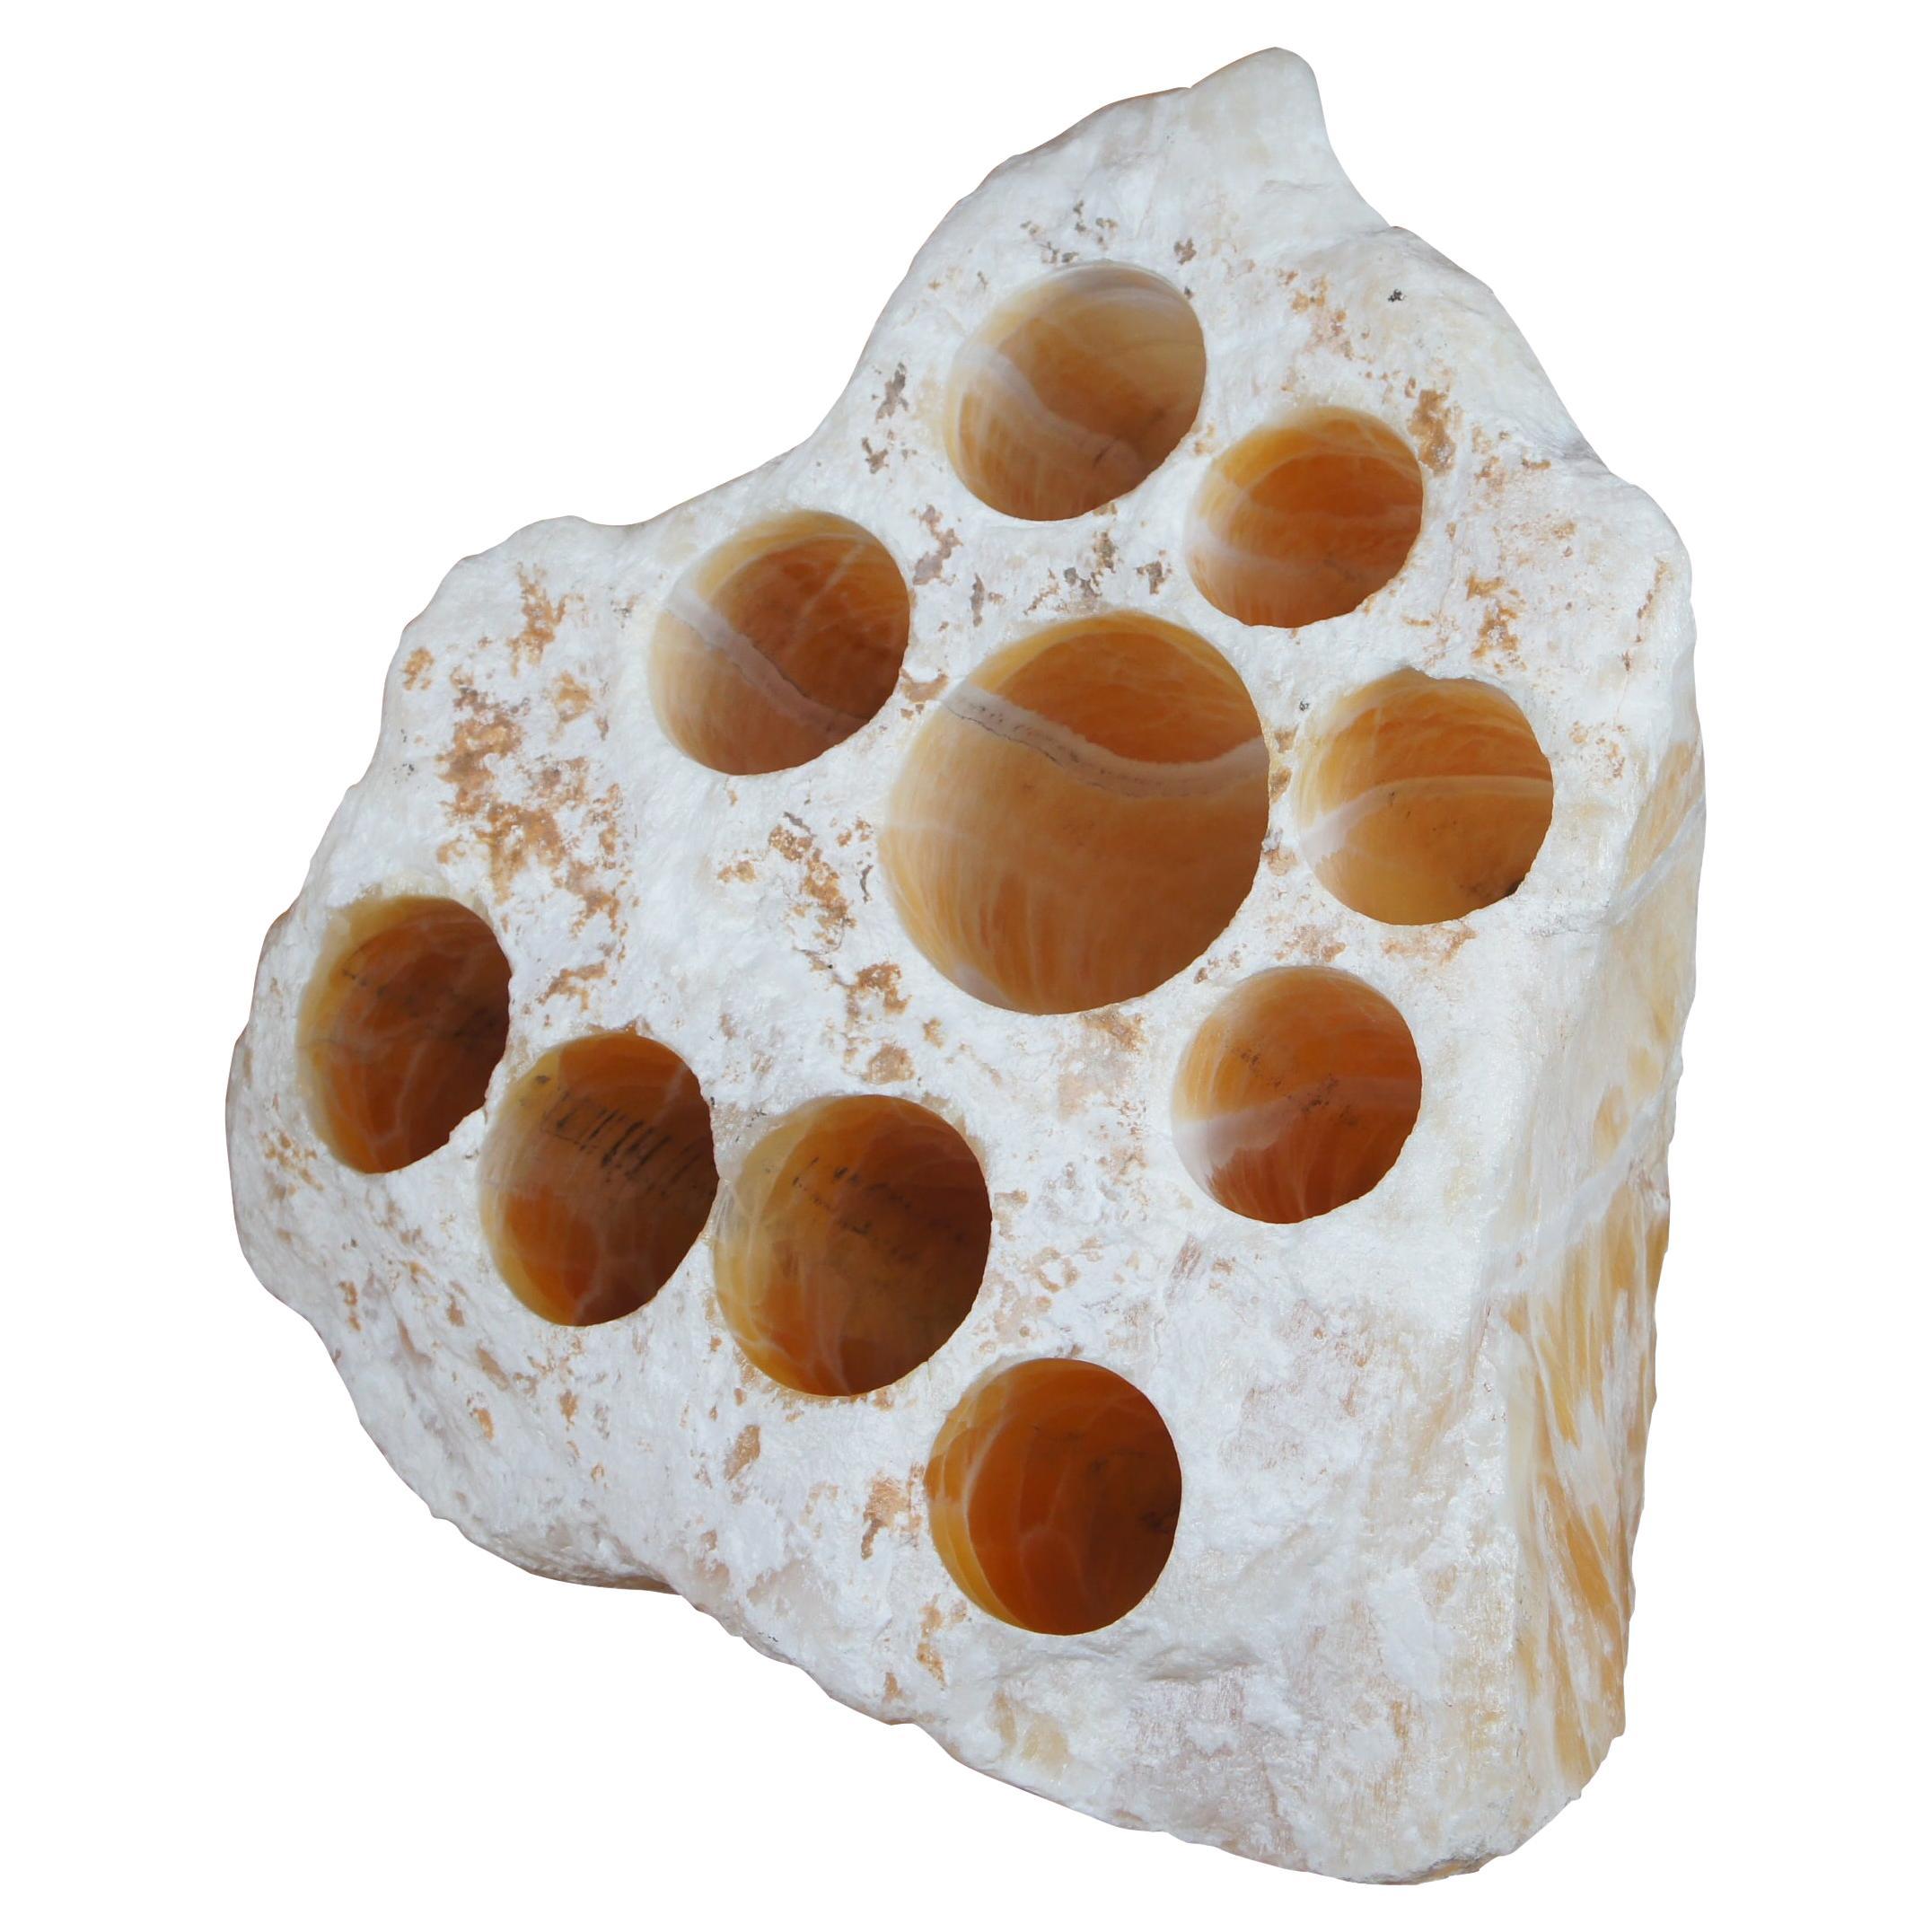 Holes formés par des cristaux de roche, onyx ambré, onyx, nid d'abeille et nid d'abeille de 102lb